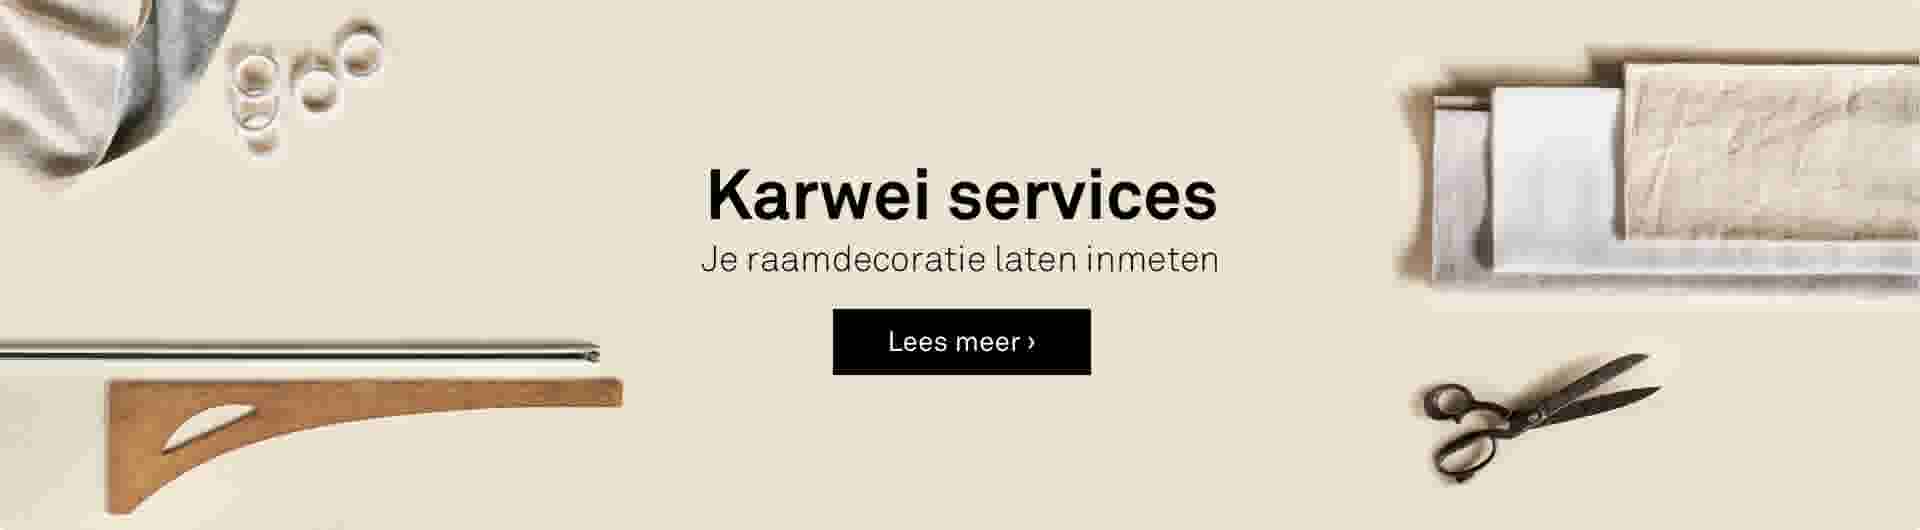 Karwei services